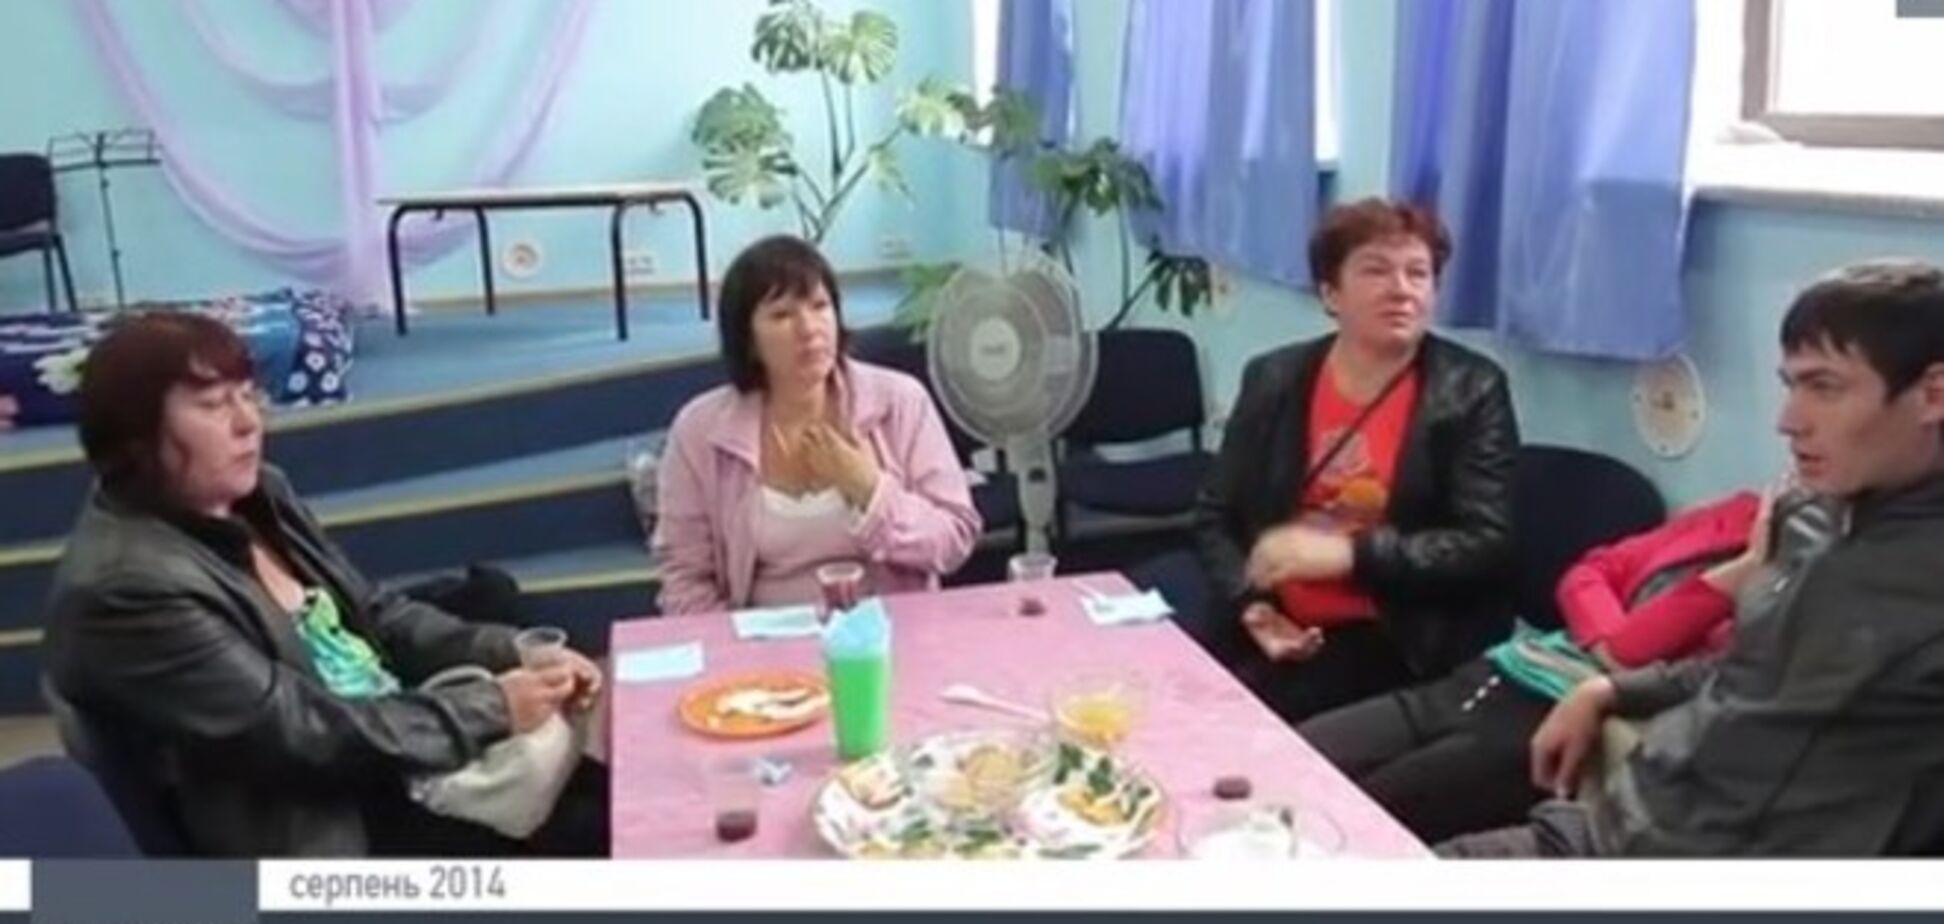 Дружини бойовиків: не треба нас визволяти, залиште нас у спокої, ми проголосували за 'ДНР'